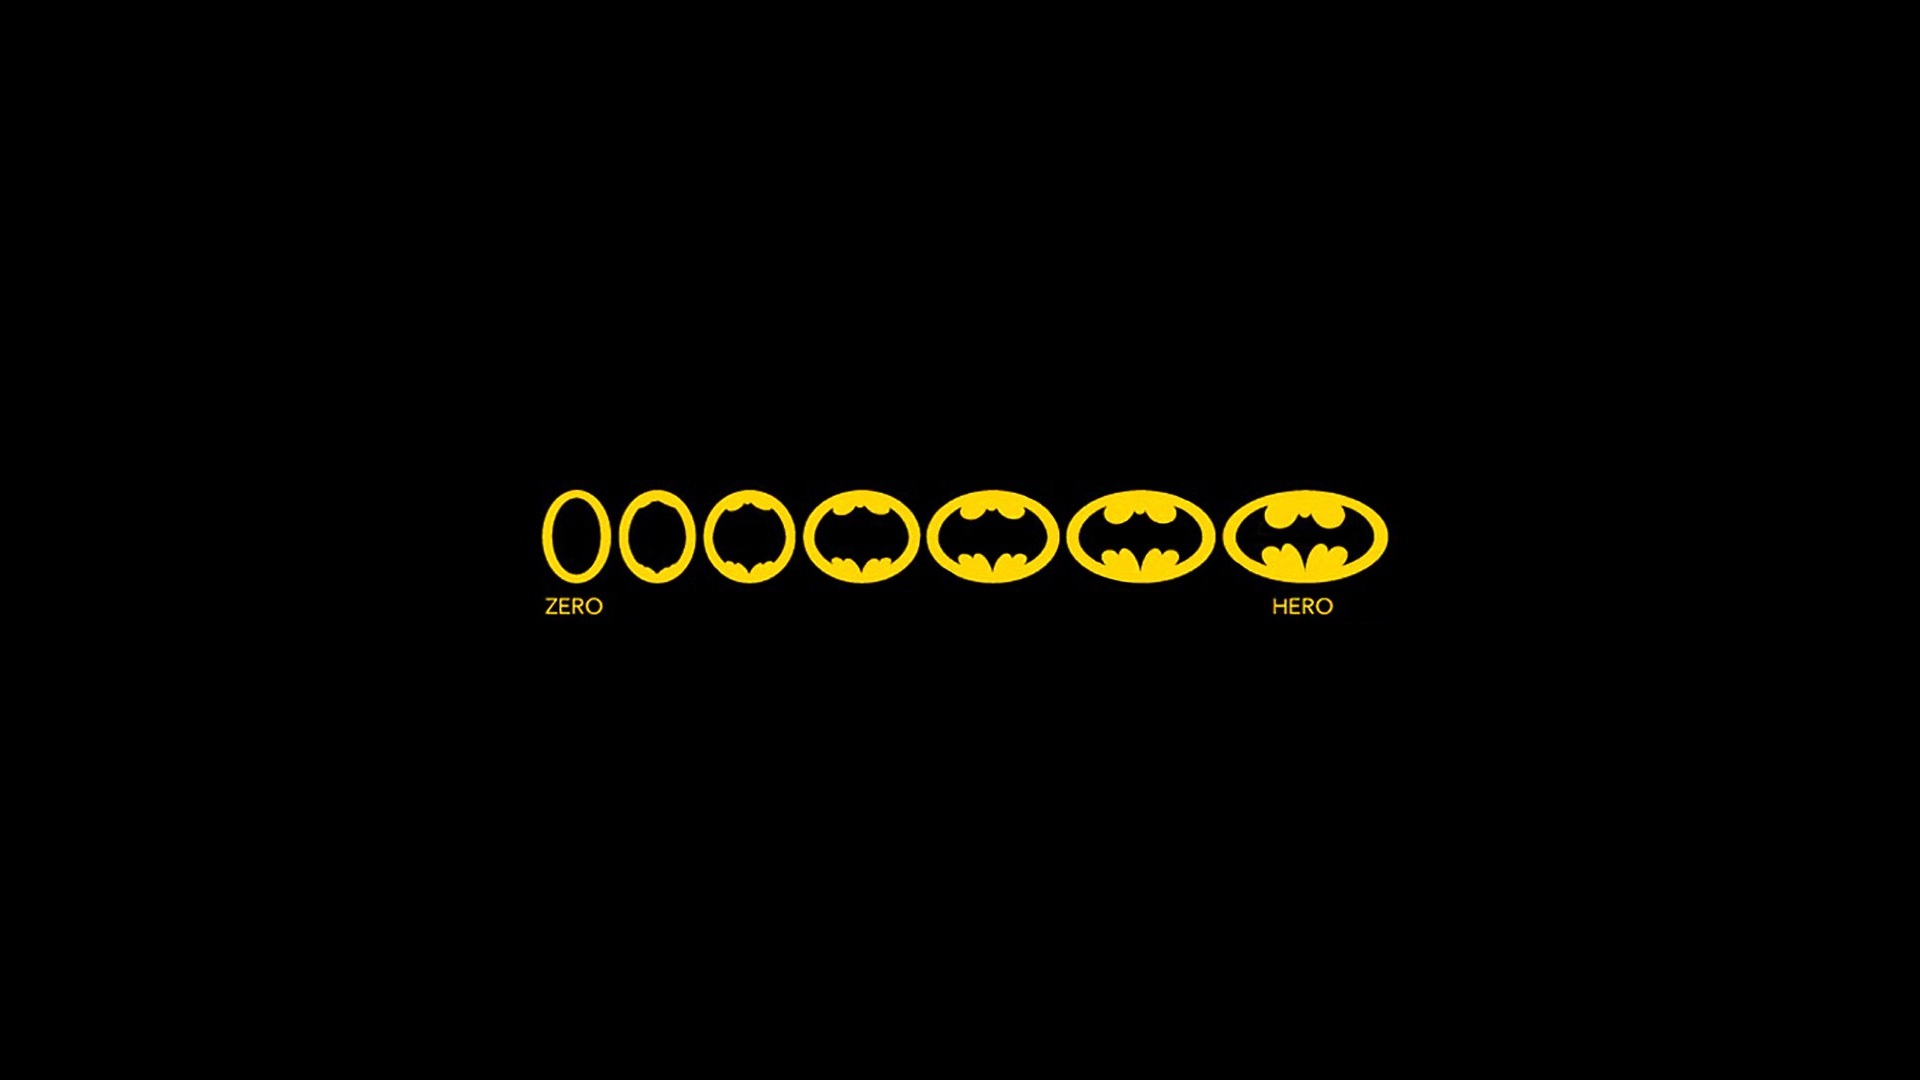 Скачать обои бесплатно Комиксы, Бэтмен, Логотип Бэтмена, Символ Бэтмена, Комиксы Dc, Лого картинка на рабочий стол ПК